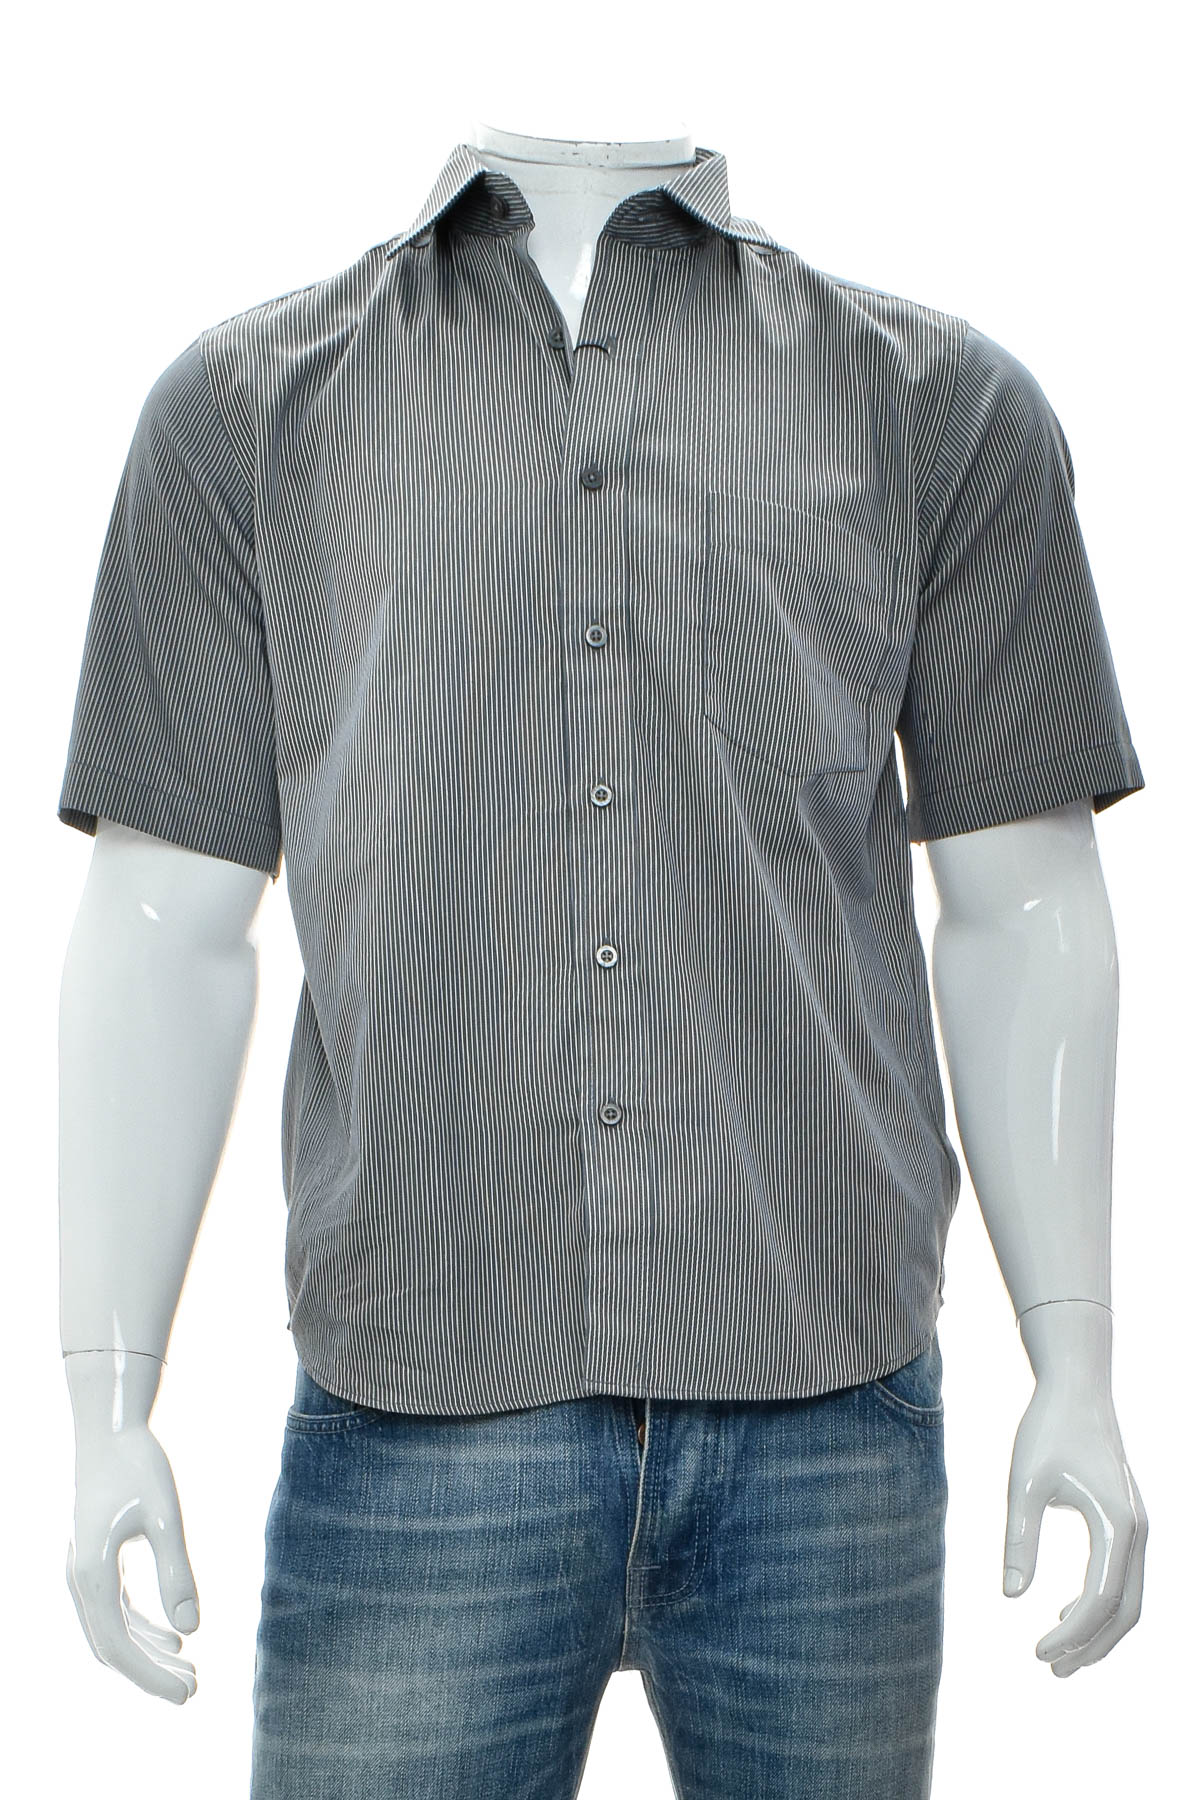 Ανδρικό πουκάμισο - JOHN KEVIN - 0